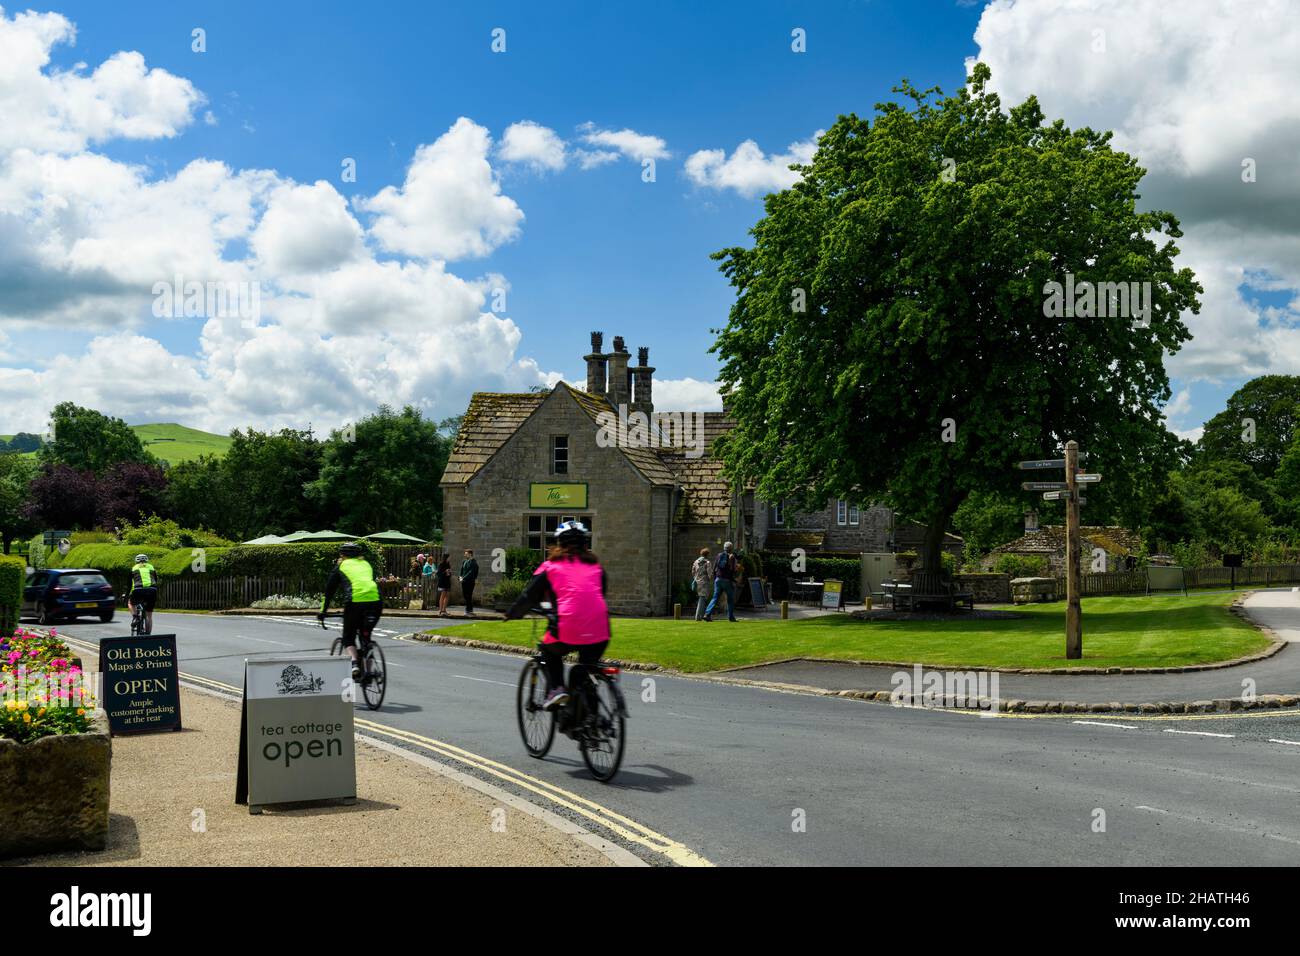 3 cyclistes et marcheurs passant devant un charmant cottage salon de thé café dans un pittoresque village rural ensoleillé - B6160 Bolton Abbey, Yorkshire Dales, Angleterre Royaume-Uni. Banque D'Images